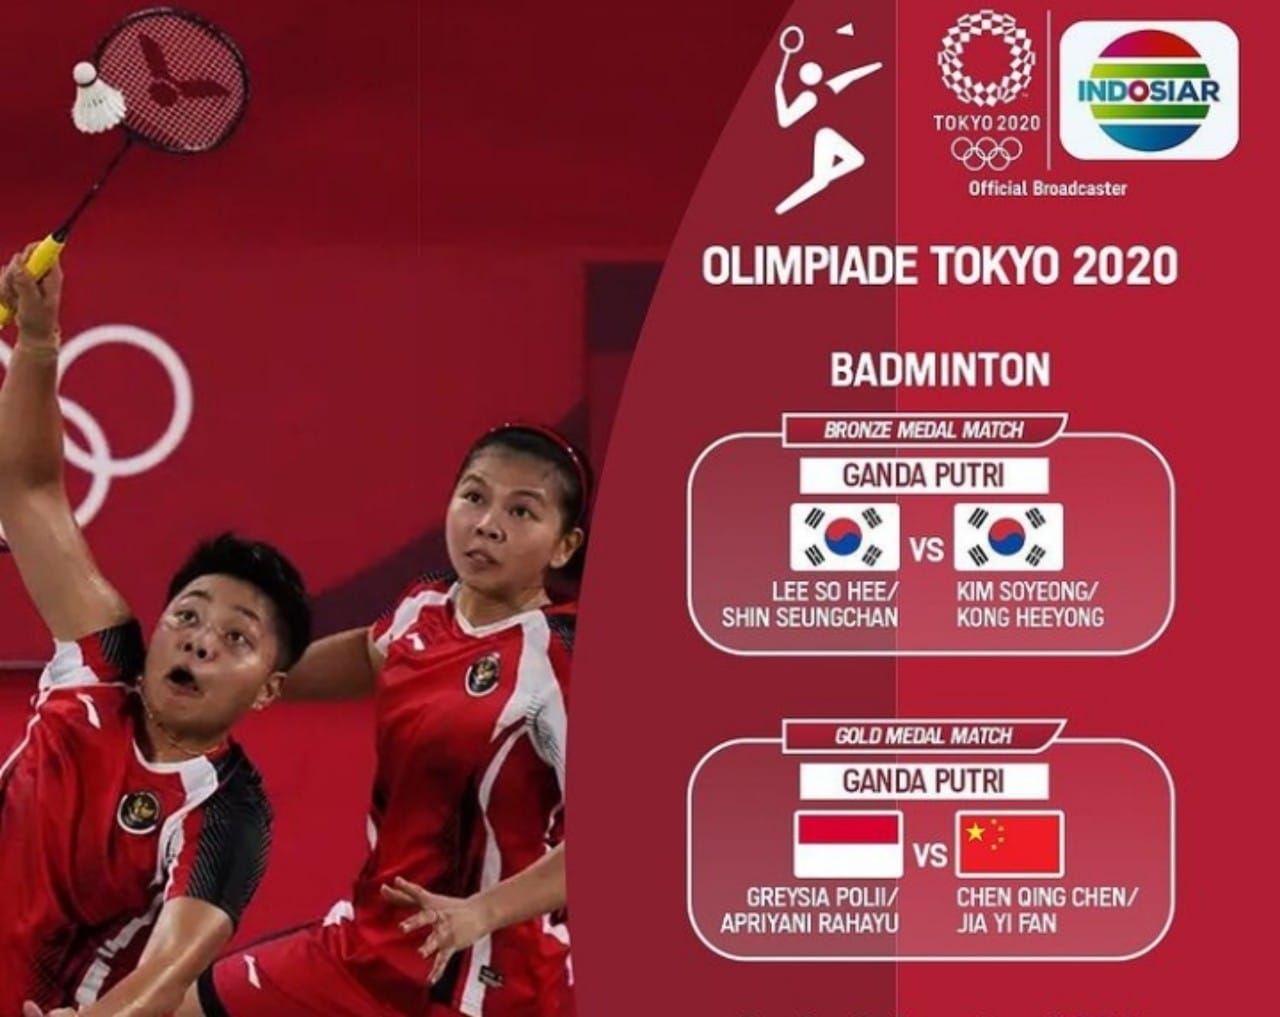 Medali badminton olimpiade tokyo 2020